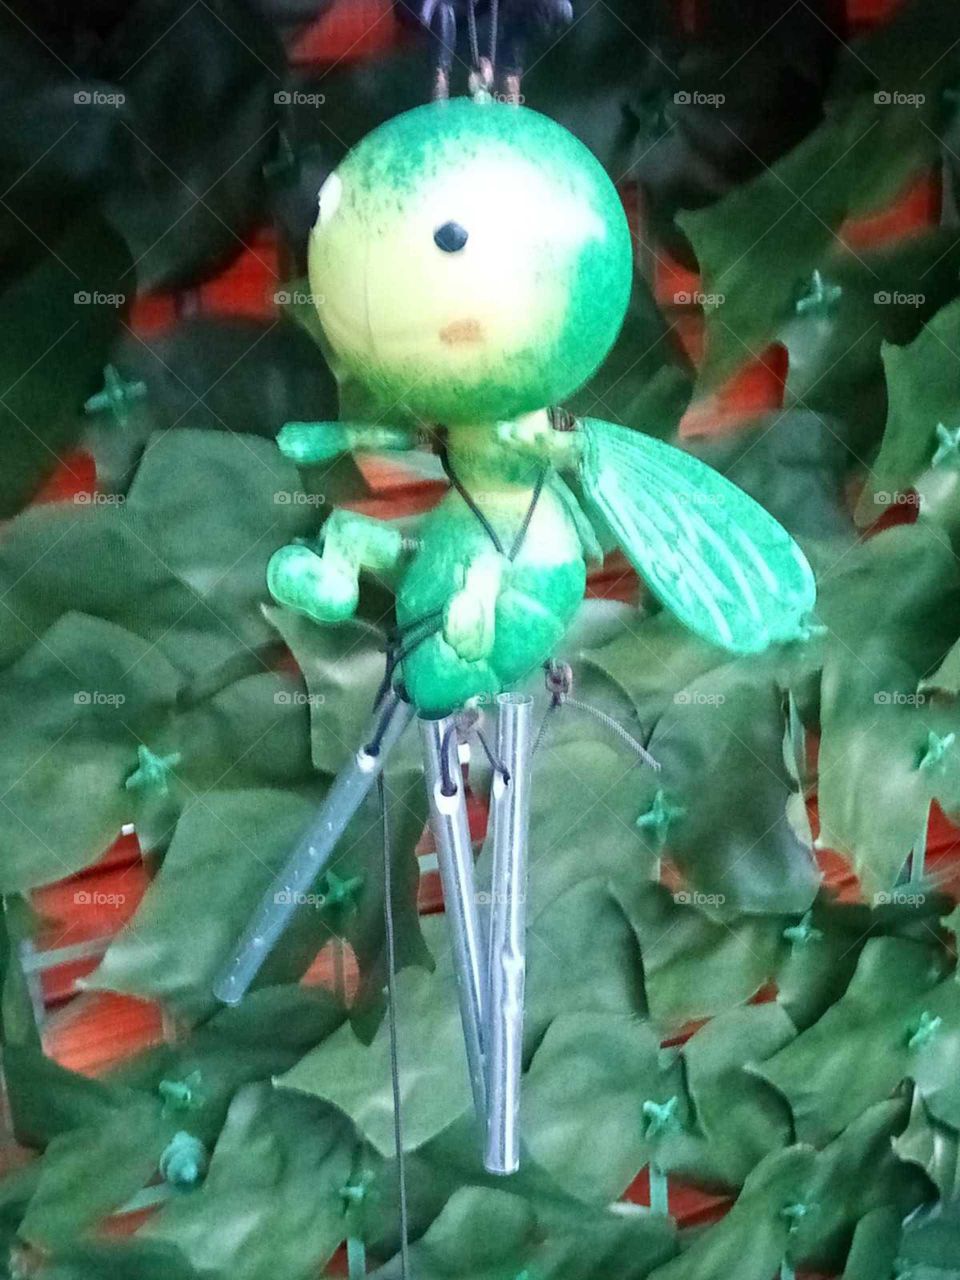 und hier ein kleines grünes Männlein,das auch noch fliegen kann